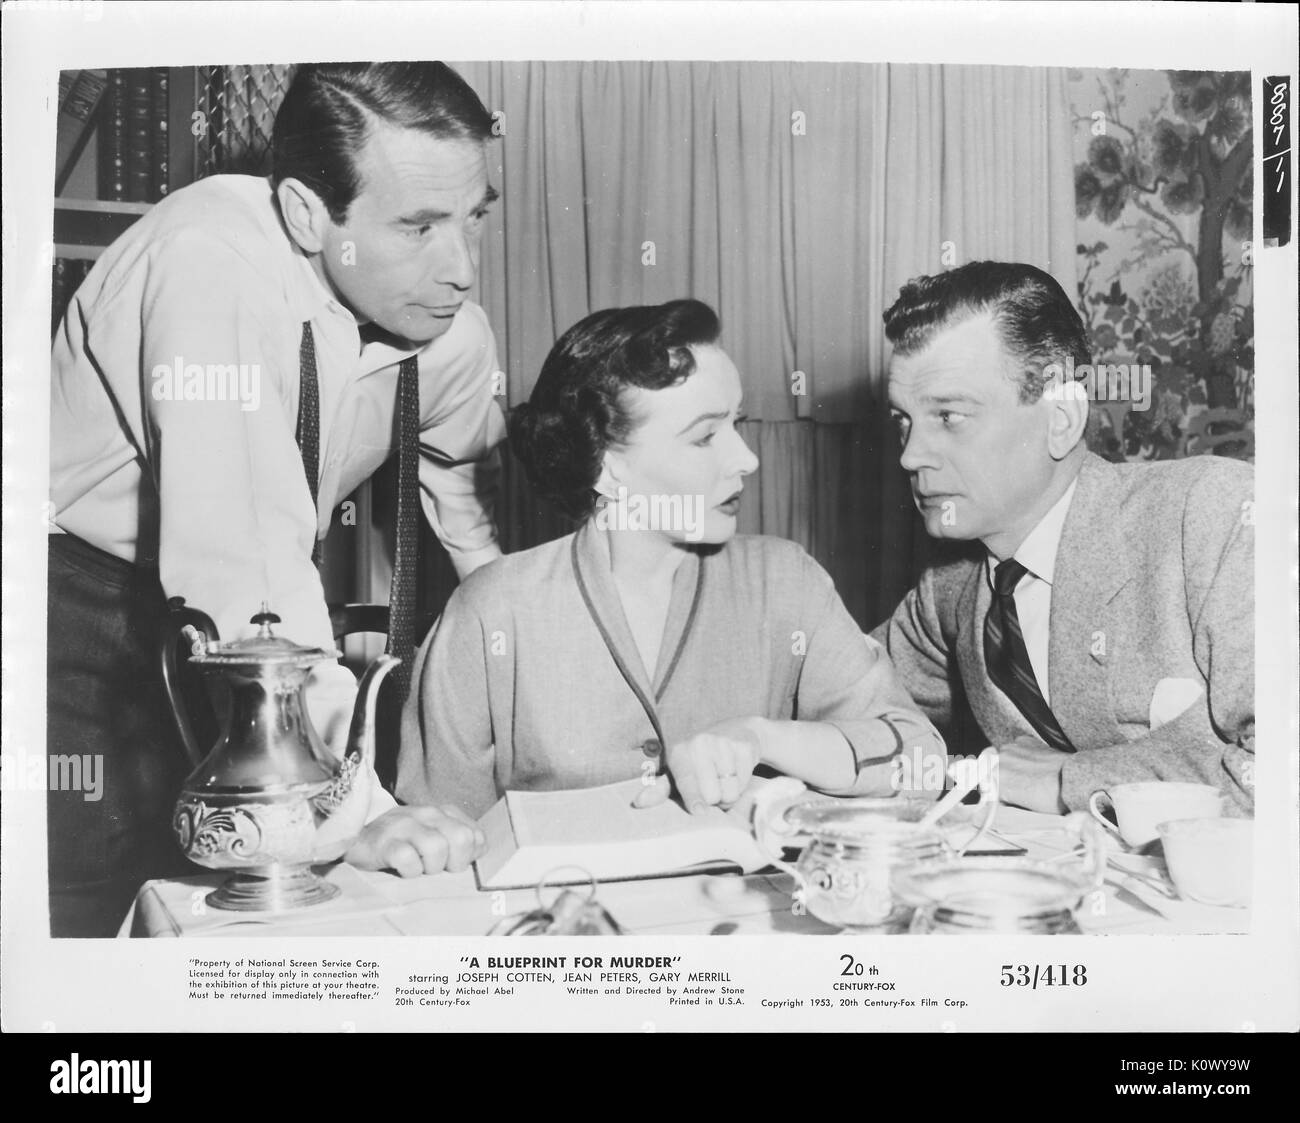 Ein Film noch Szene aus "eine Blaupause für Mord" (1953 Twentieth Century Fox thriller), zeigt eine sitzende Frau, etwas in einem Buch zu dem Mann auf Ihrem linken, während der andere Mann auf Ihrem rechten hört, 1953. Stockfoto